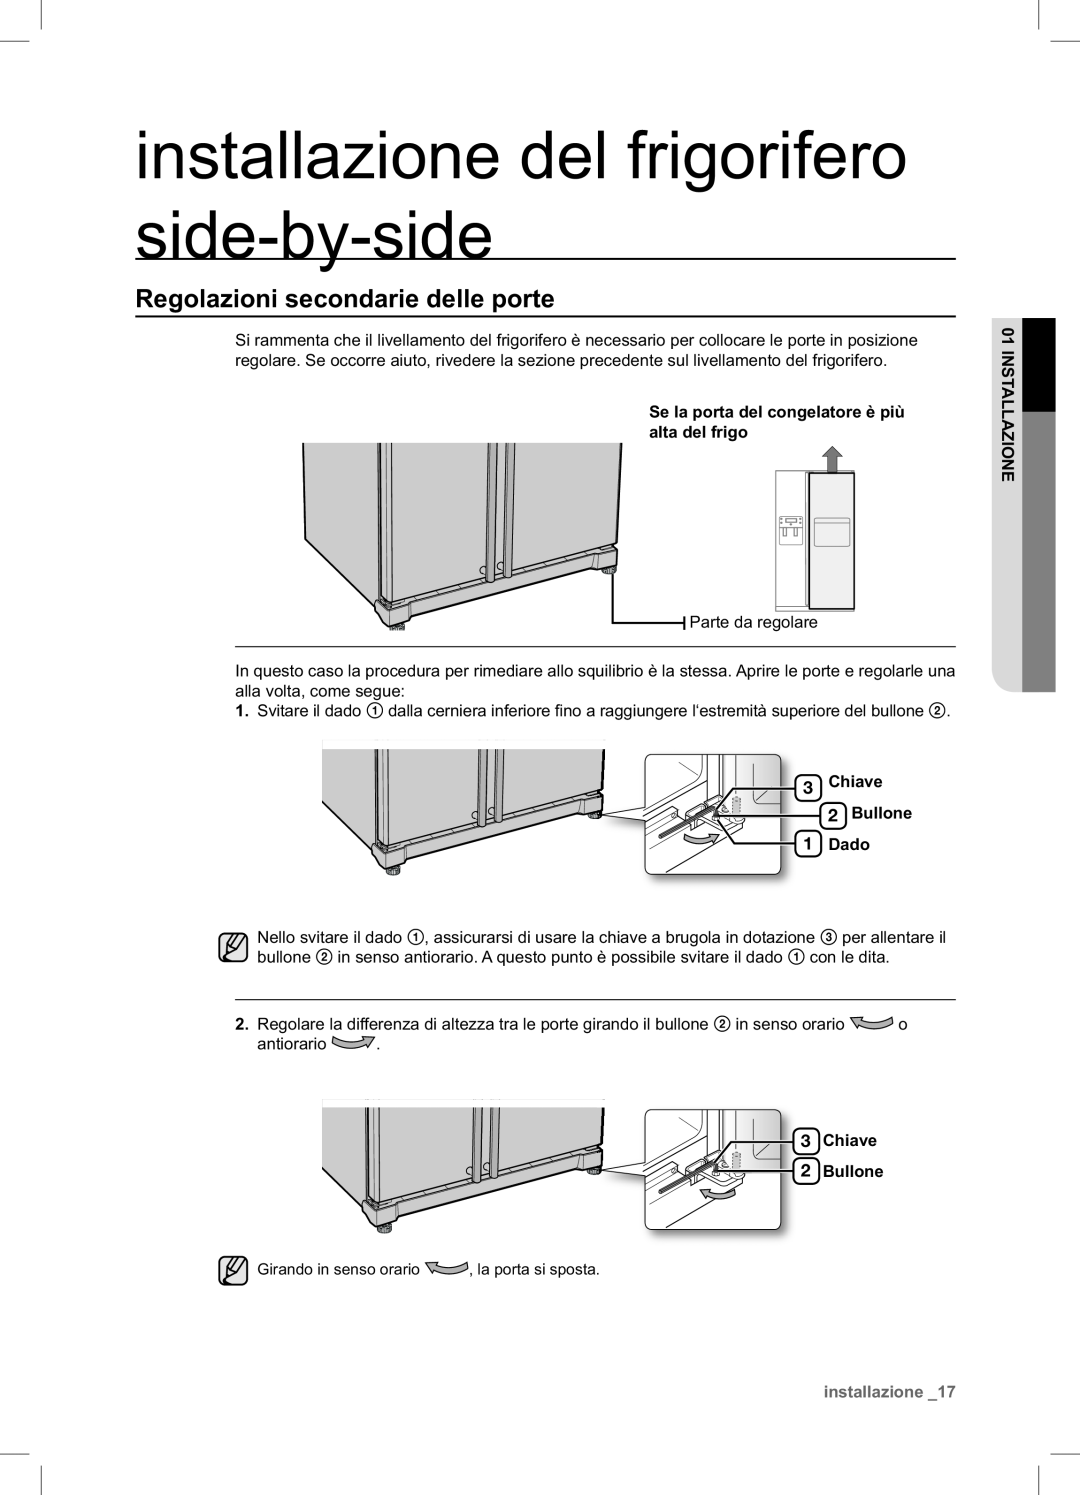 Samsung RSA1NTPE1/XES manual Regolazioni secondarie delle porte, installazione del frigorifero side-by-side 